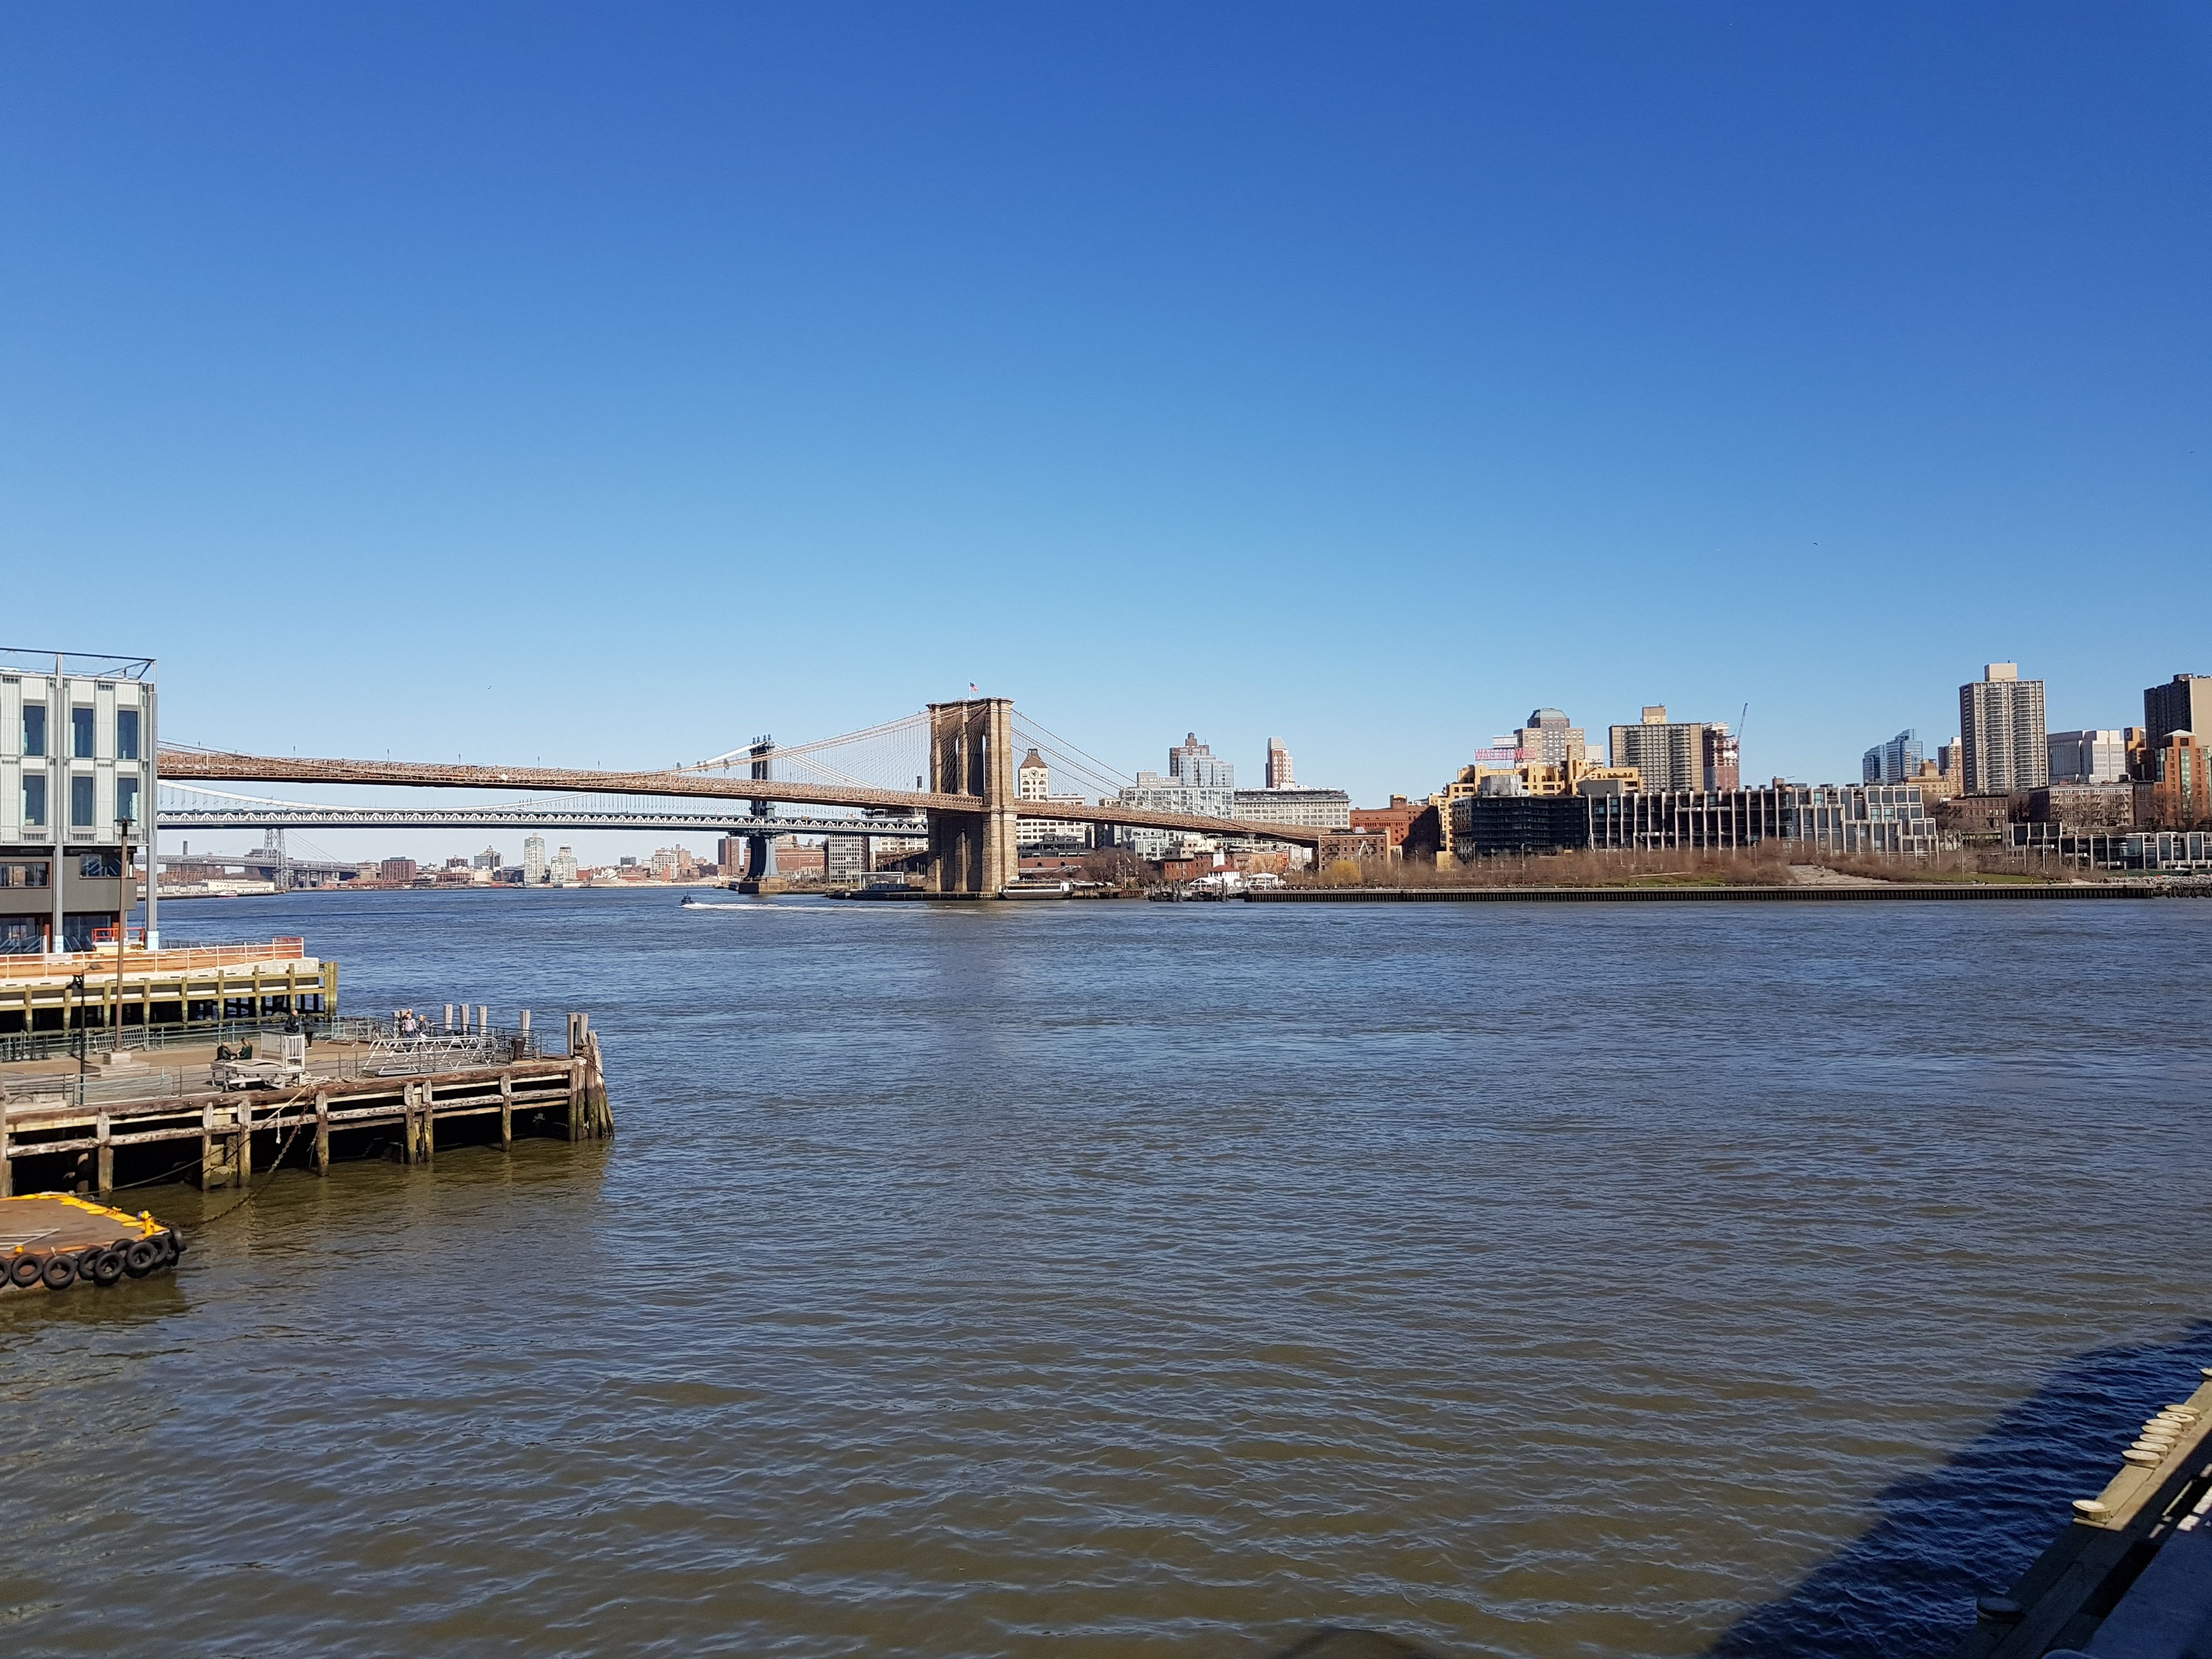 ตัวอย่างภาพถ่ายจากกล้อง Galaxy S8 ทั้งหน้าและหลัง จัดเซทใหญ่ส่งตรงจากนิวยอร์ค สวยขนาดไหนมาดูกัน